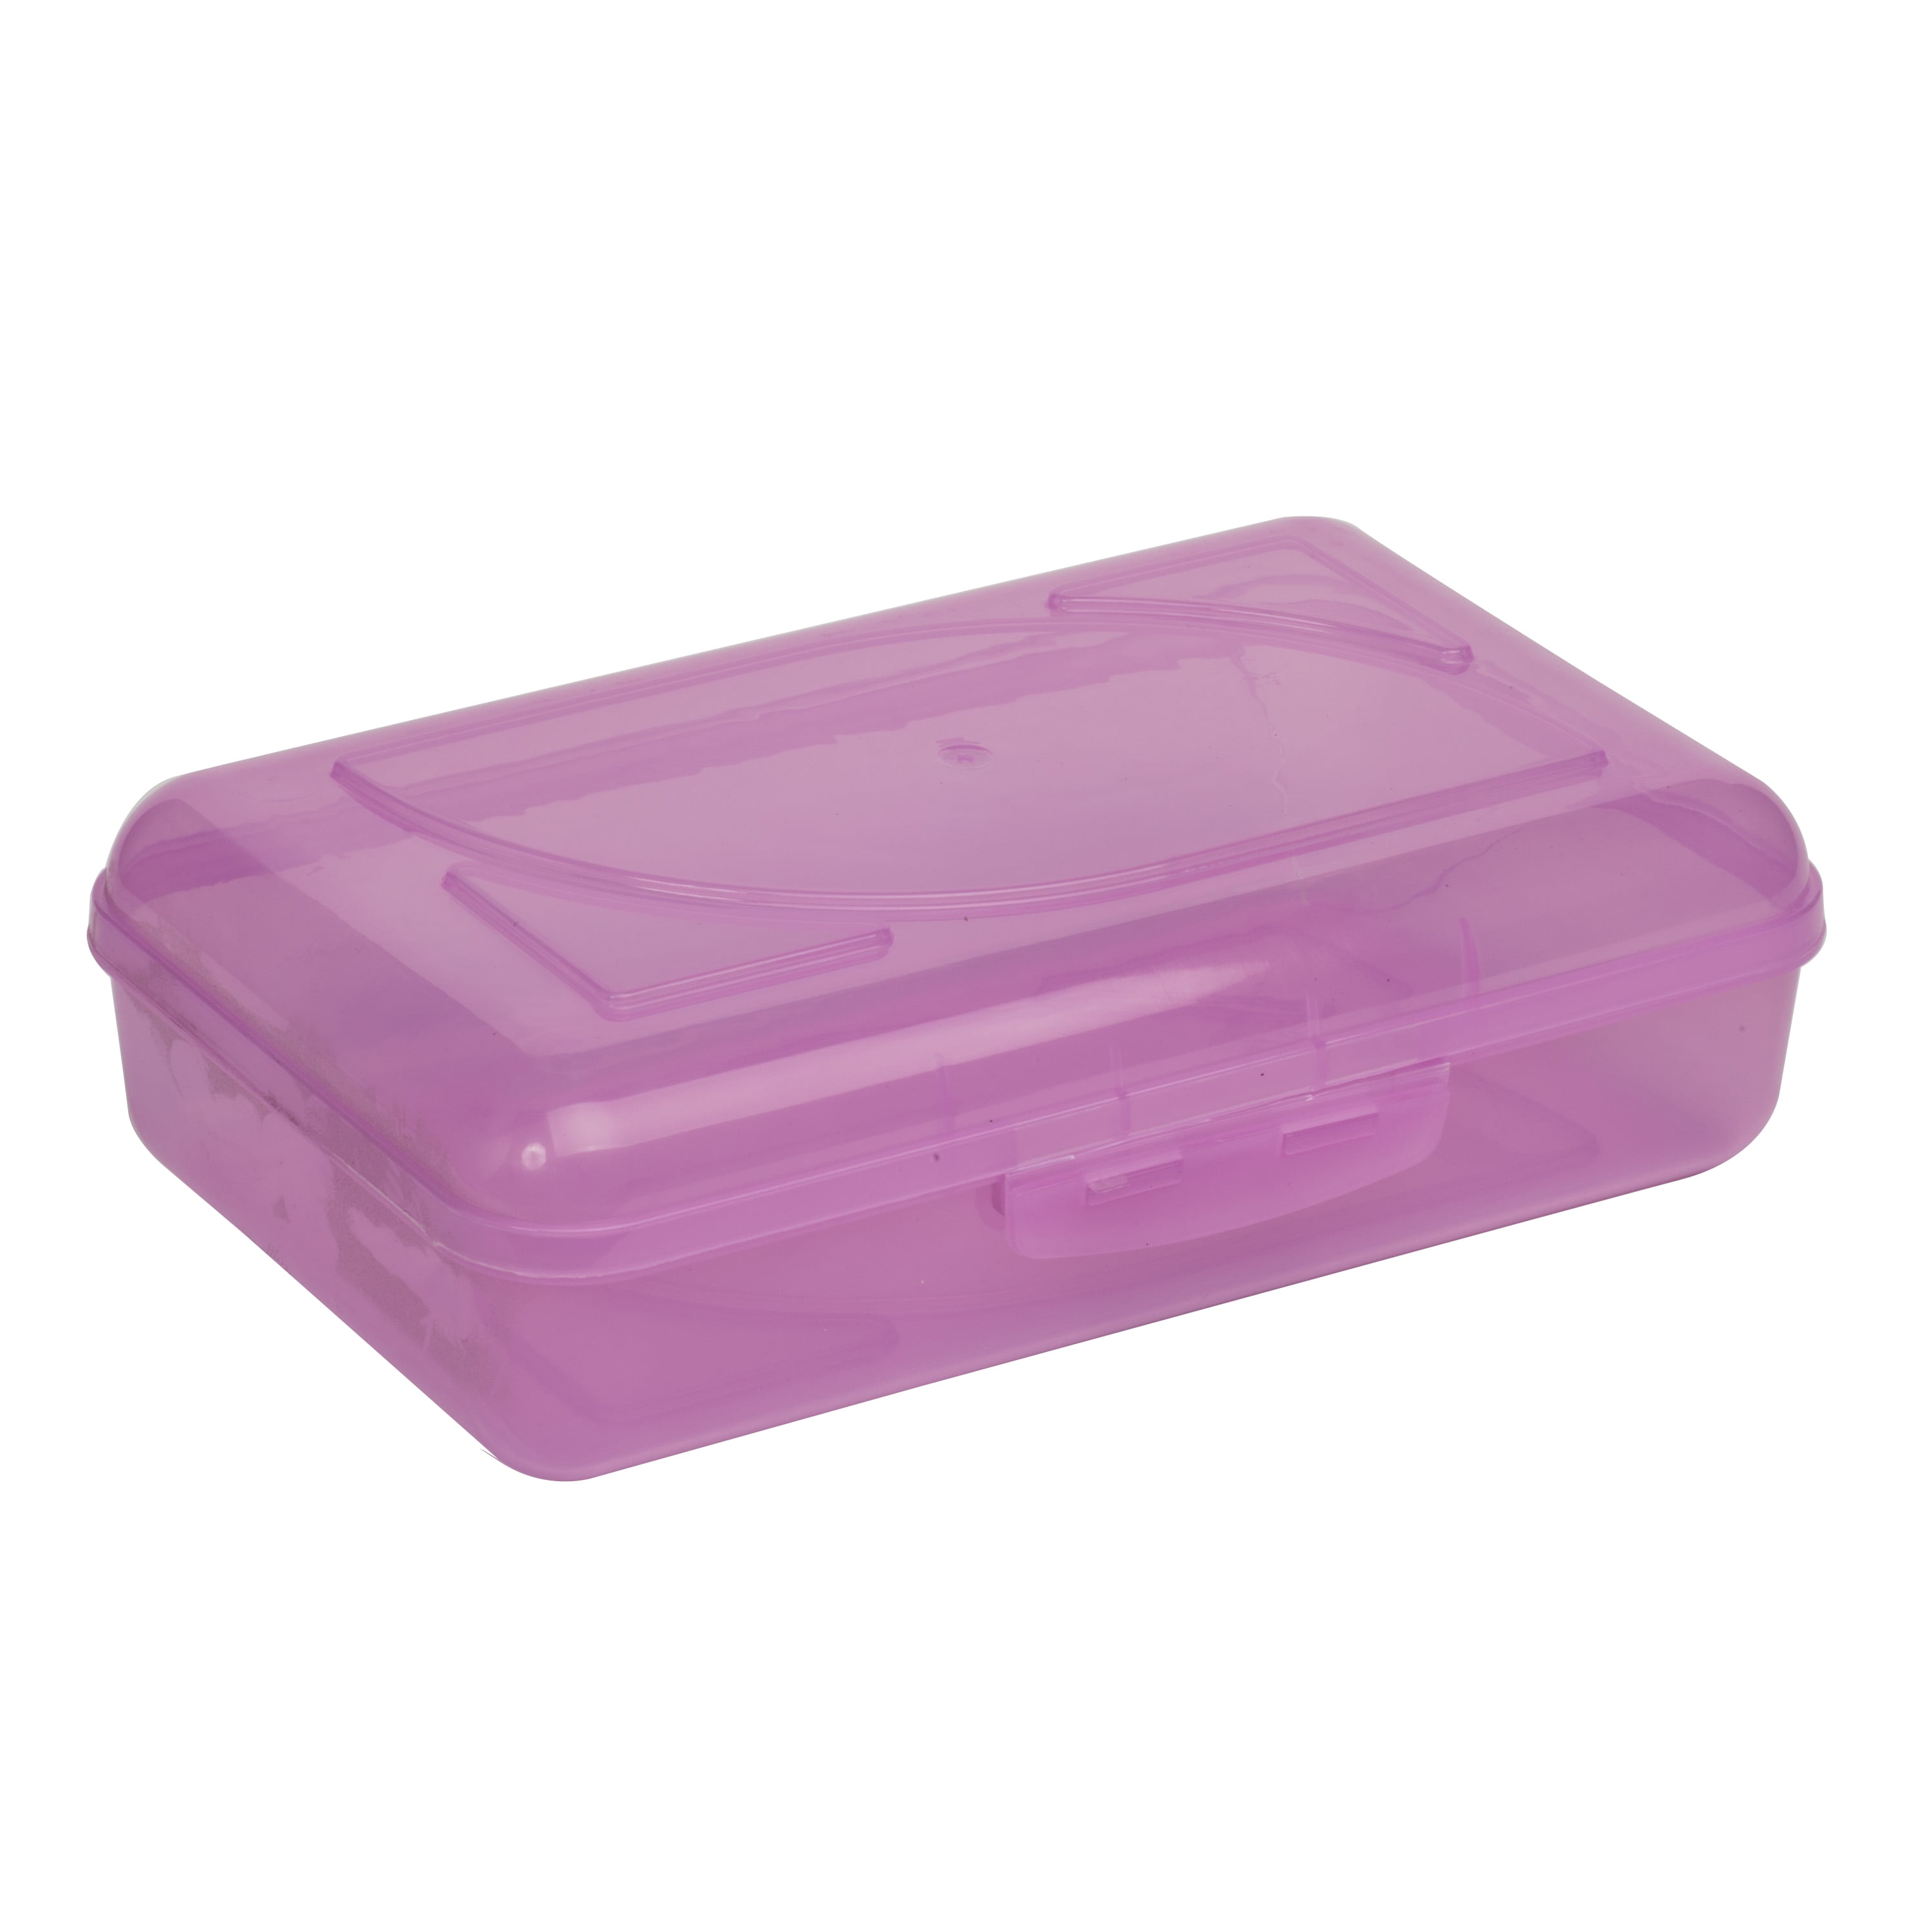 Cra-Z-Art Plastic School Box, 2-3/16”H x 5-3/16”W x 8”D, Clear